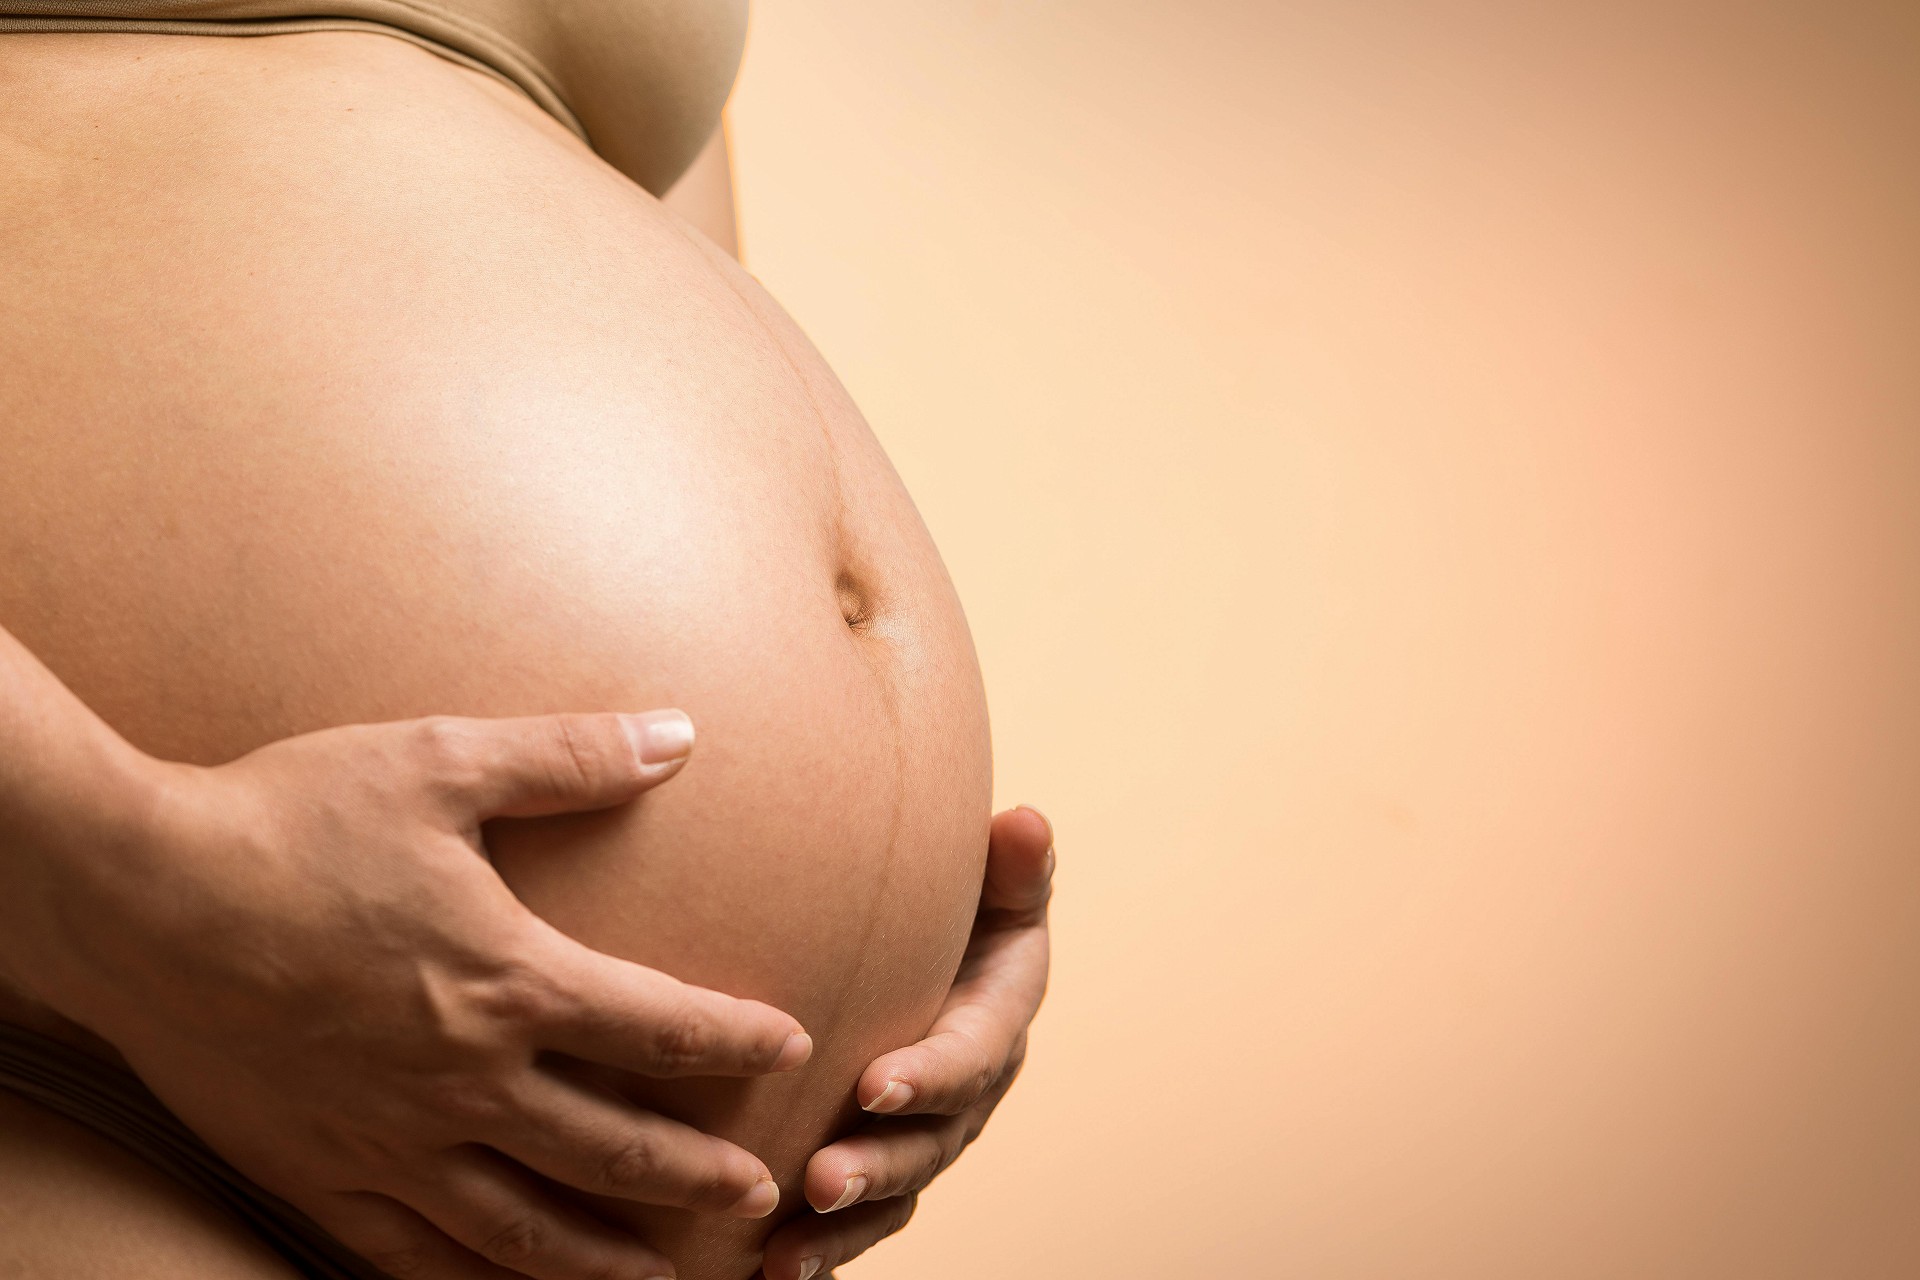 Összefüggés mutatható ki a születési testsúly, a terhességi szövődmények és a fogzománc hibák között